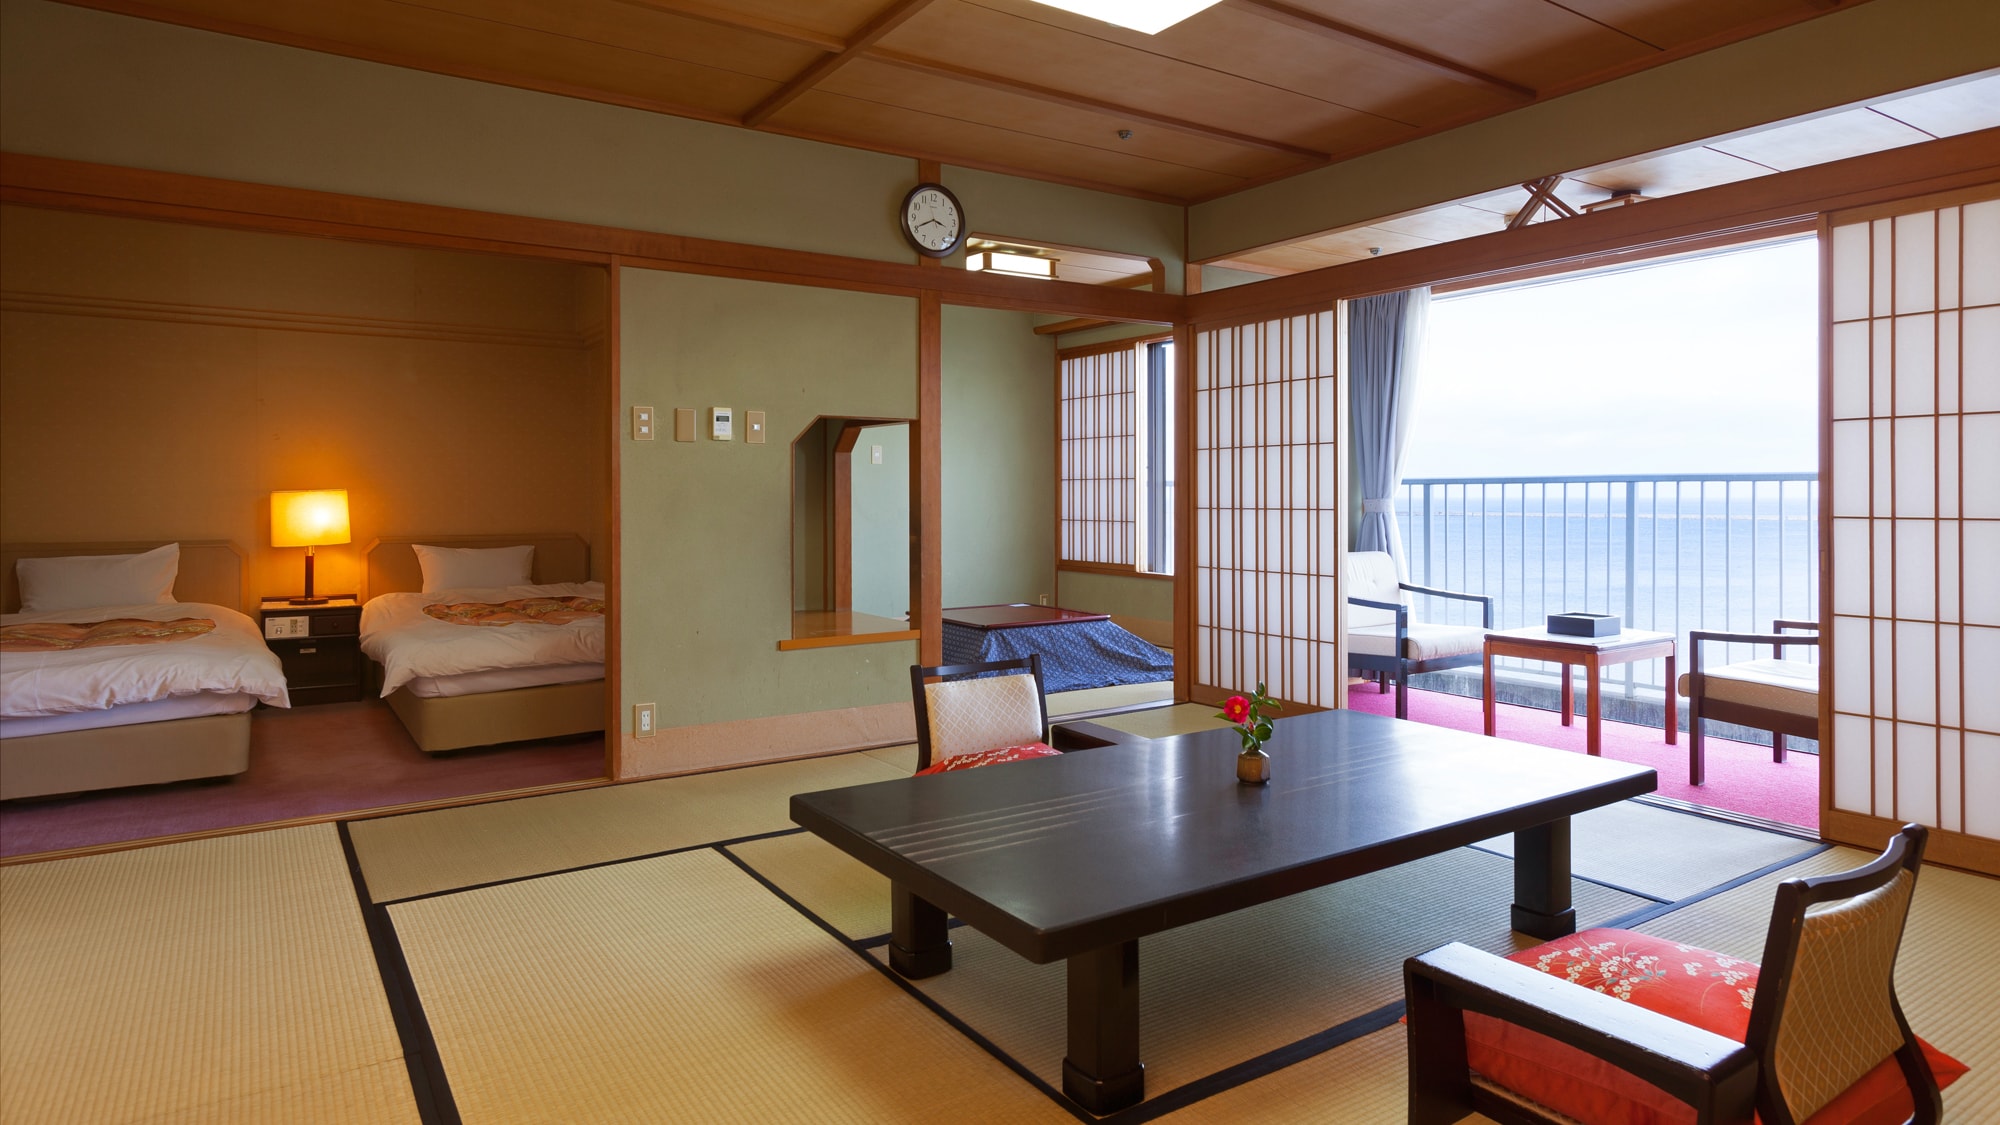 ◆ ห้องพิเศษ [Hana Urushi] ห้องสไตล์ญี่ปุ่นและตะวันตก 12.5 เสื่อทาทามิ + 4.5 เสื่อทาทามิ + เตียงคู่